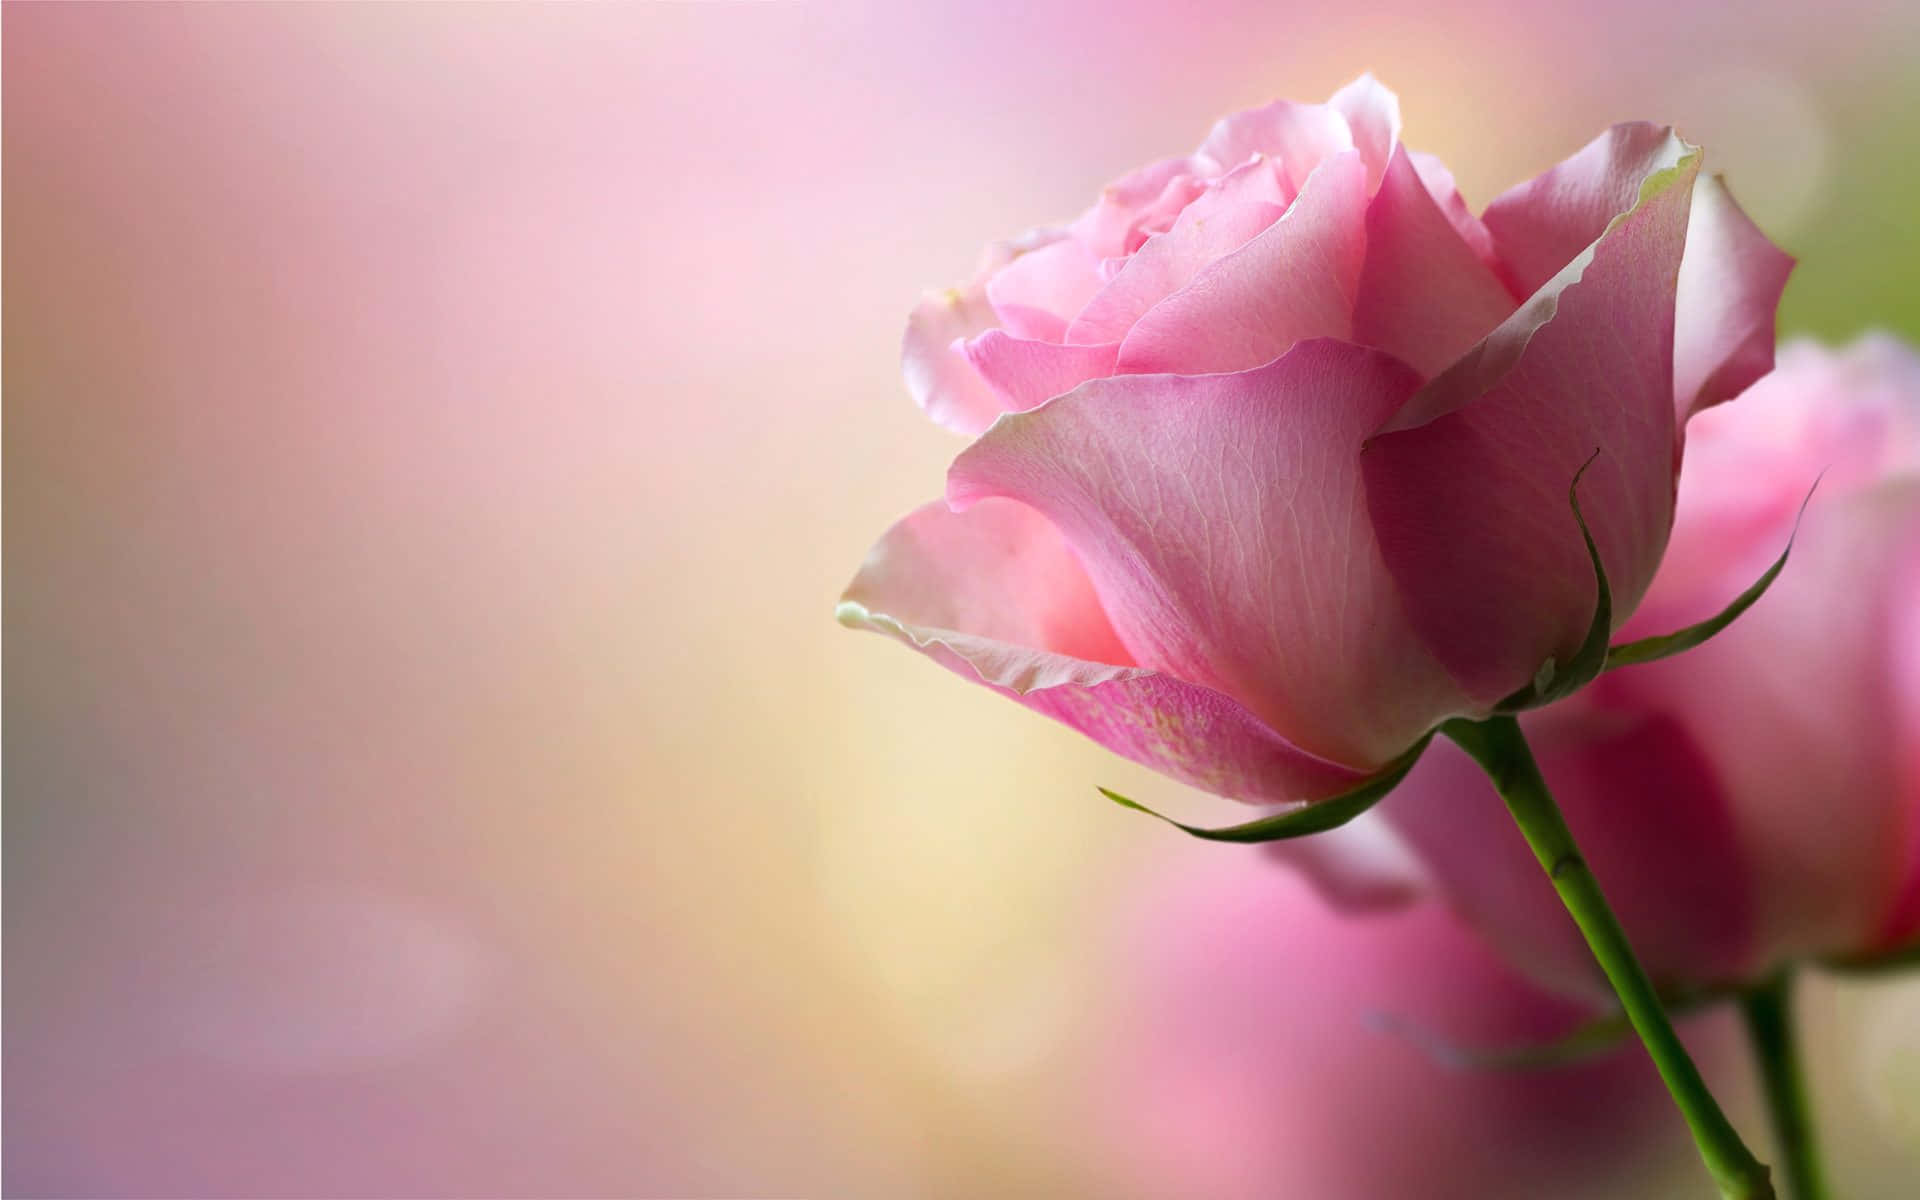 Unasola Rosa Rosada Asombrosamente Hermosa En Plena Floración.